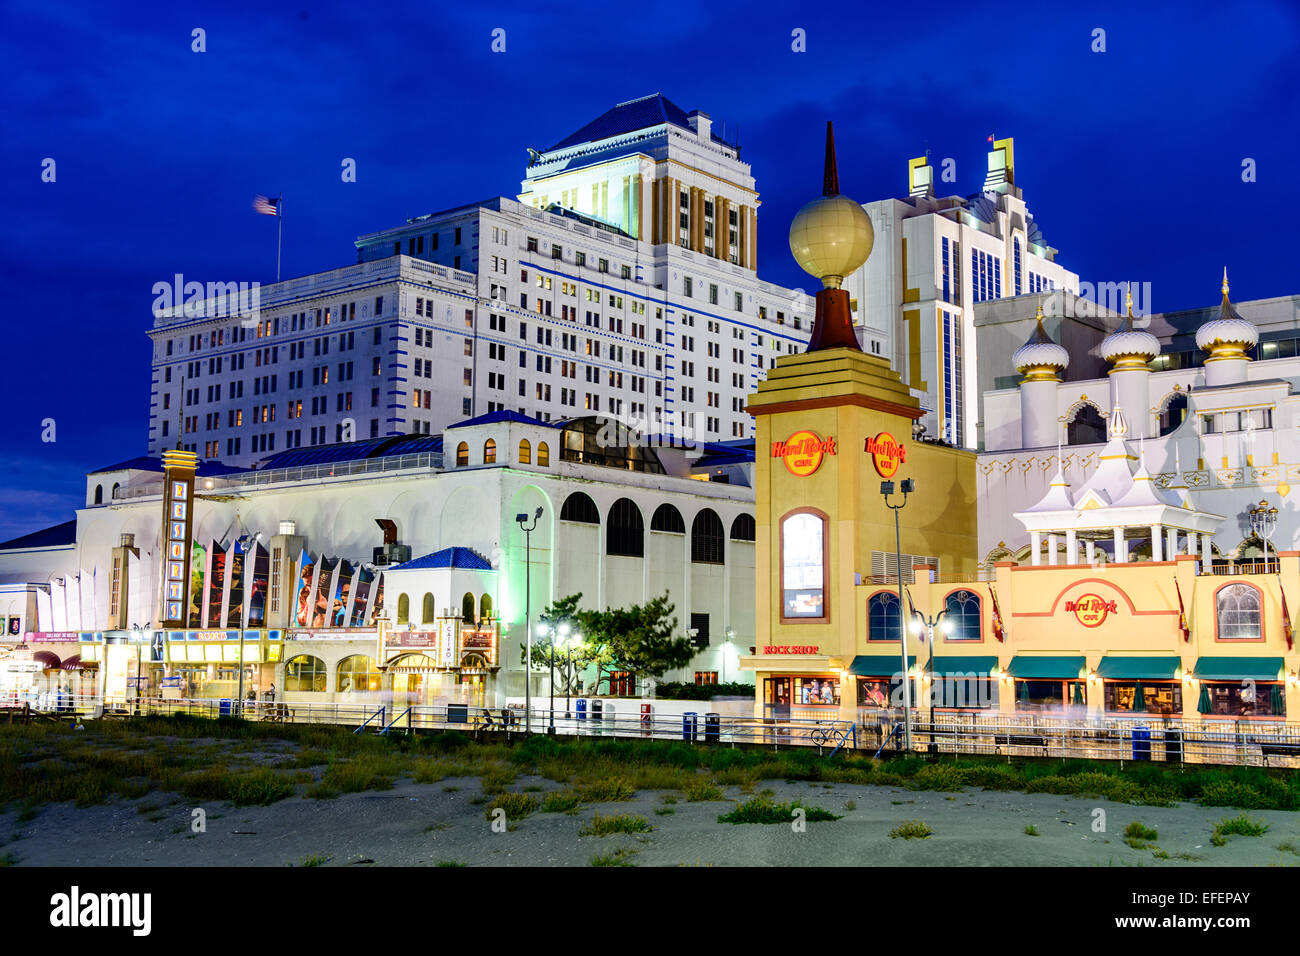 ATLANTIC CITY, NEW JERSEY - 8. September 2012: Casinos säumen der Atlantic City Boardwalk in der Abenddämmerung. Stockfoto